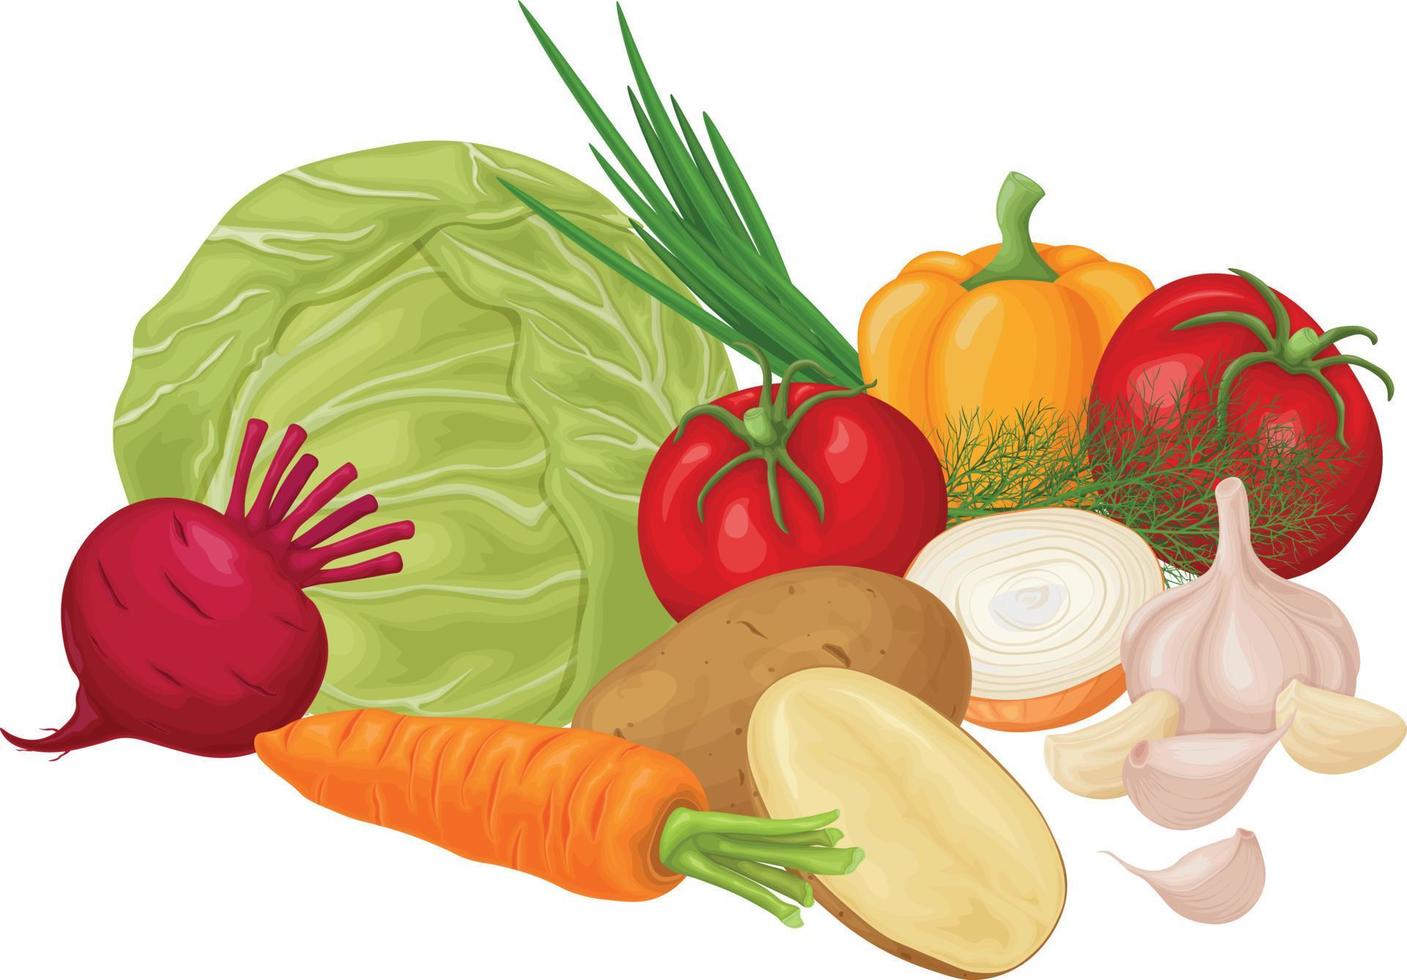 vegetais. imagem de vegetais como tomate repolho, cebola, alho e batata e também cenoura com beterraba. legumes maduros do jardim. produtos vitamínicos vegetarianos. vetor. vetor